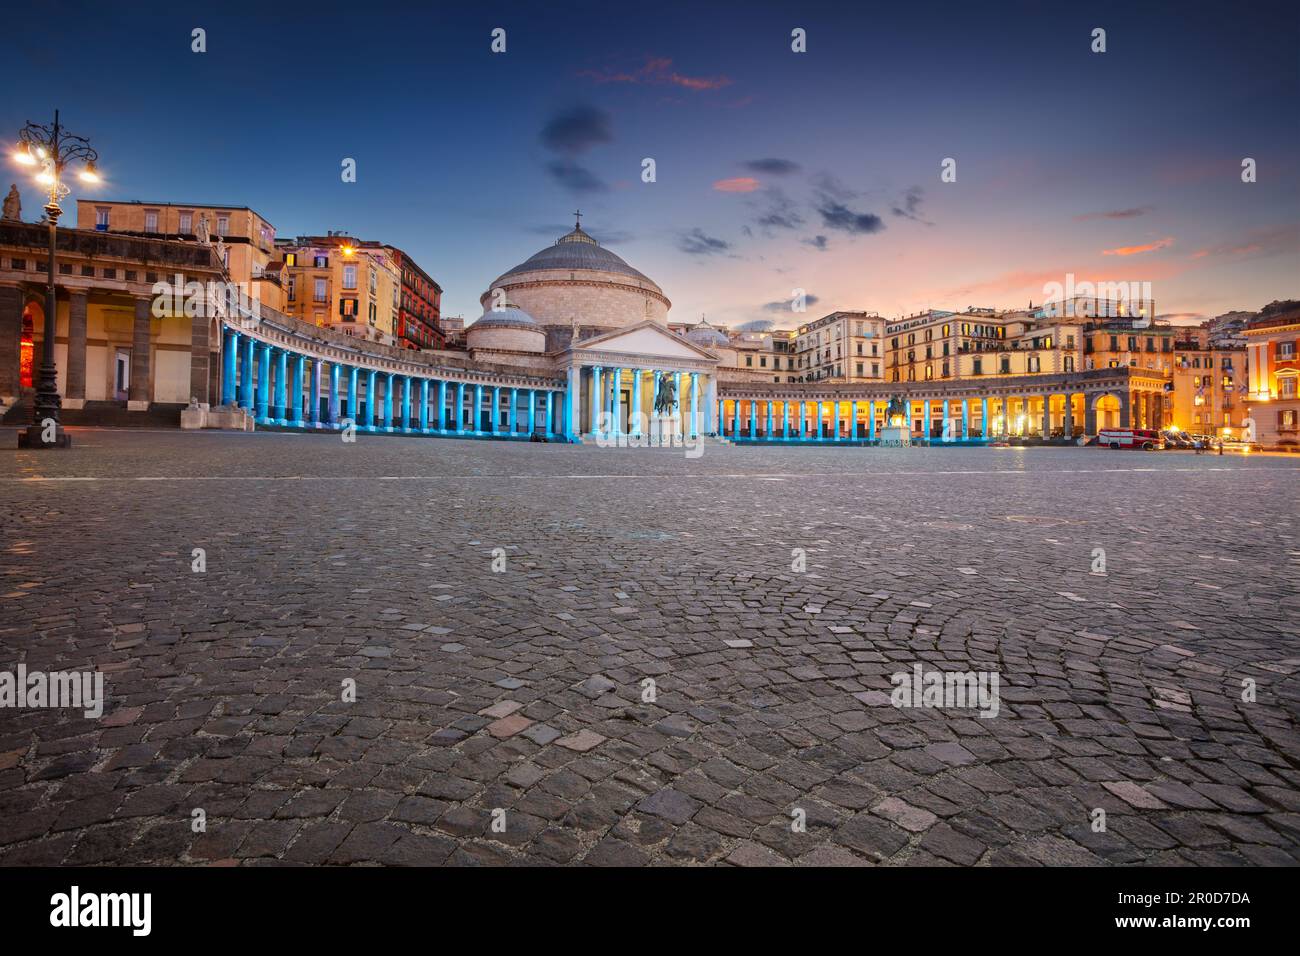 Neapel, Italien. Stadtbild von Neapel, Italien, mit Blick auf den großen öffentlichen Platz Piazza del Plebiscito bei Sonnenuntergang. Stockfoto